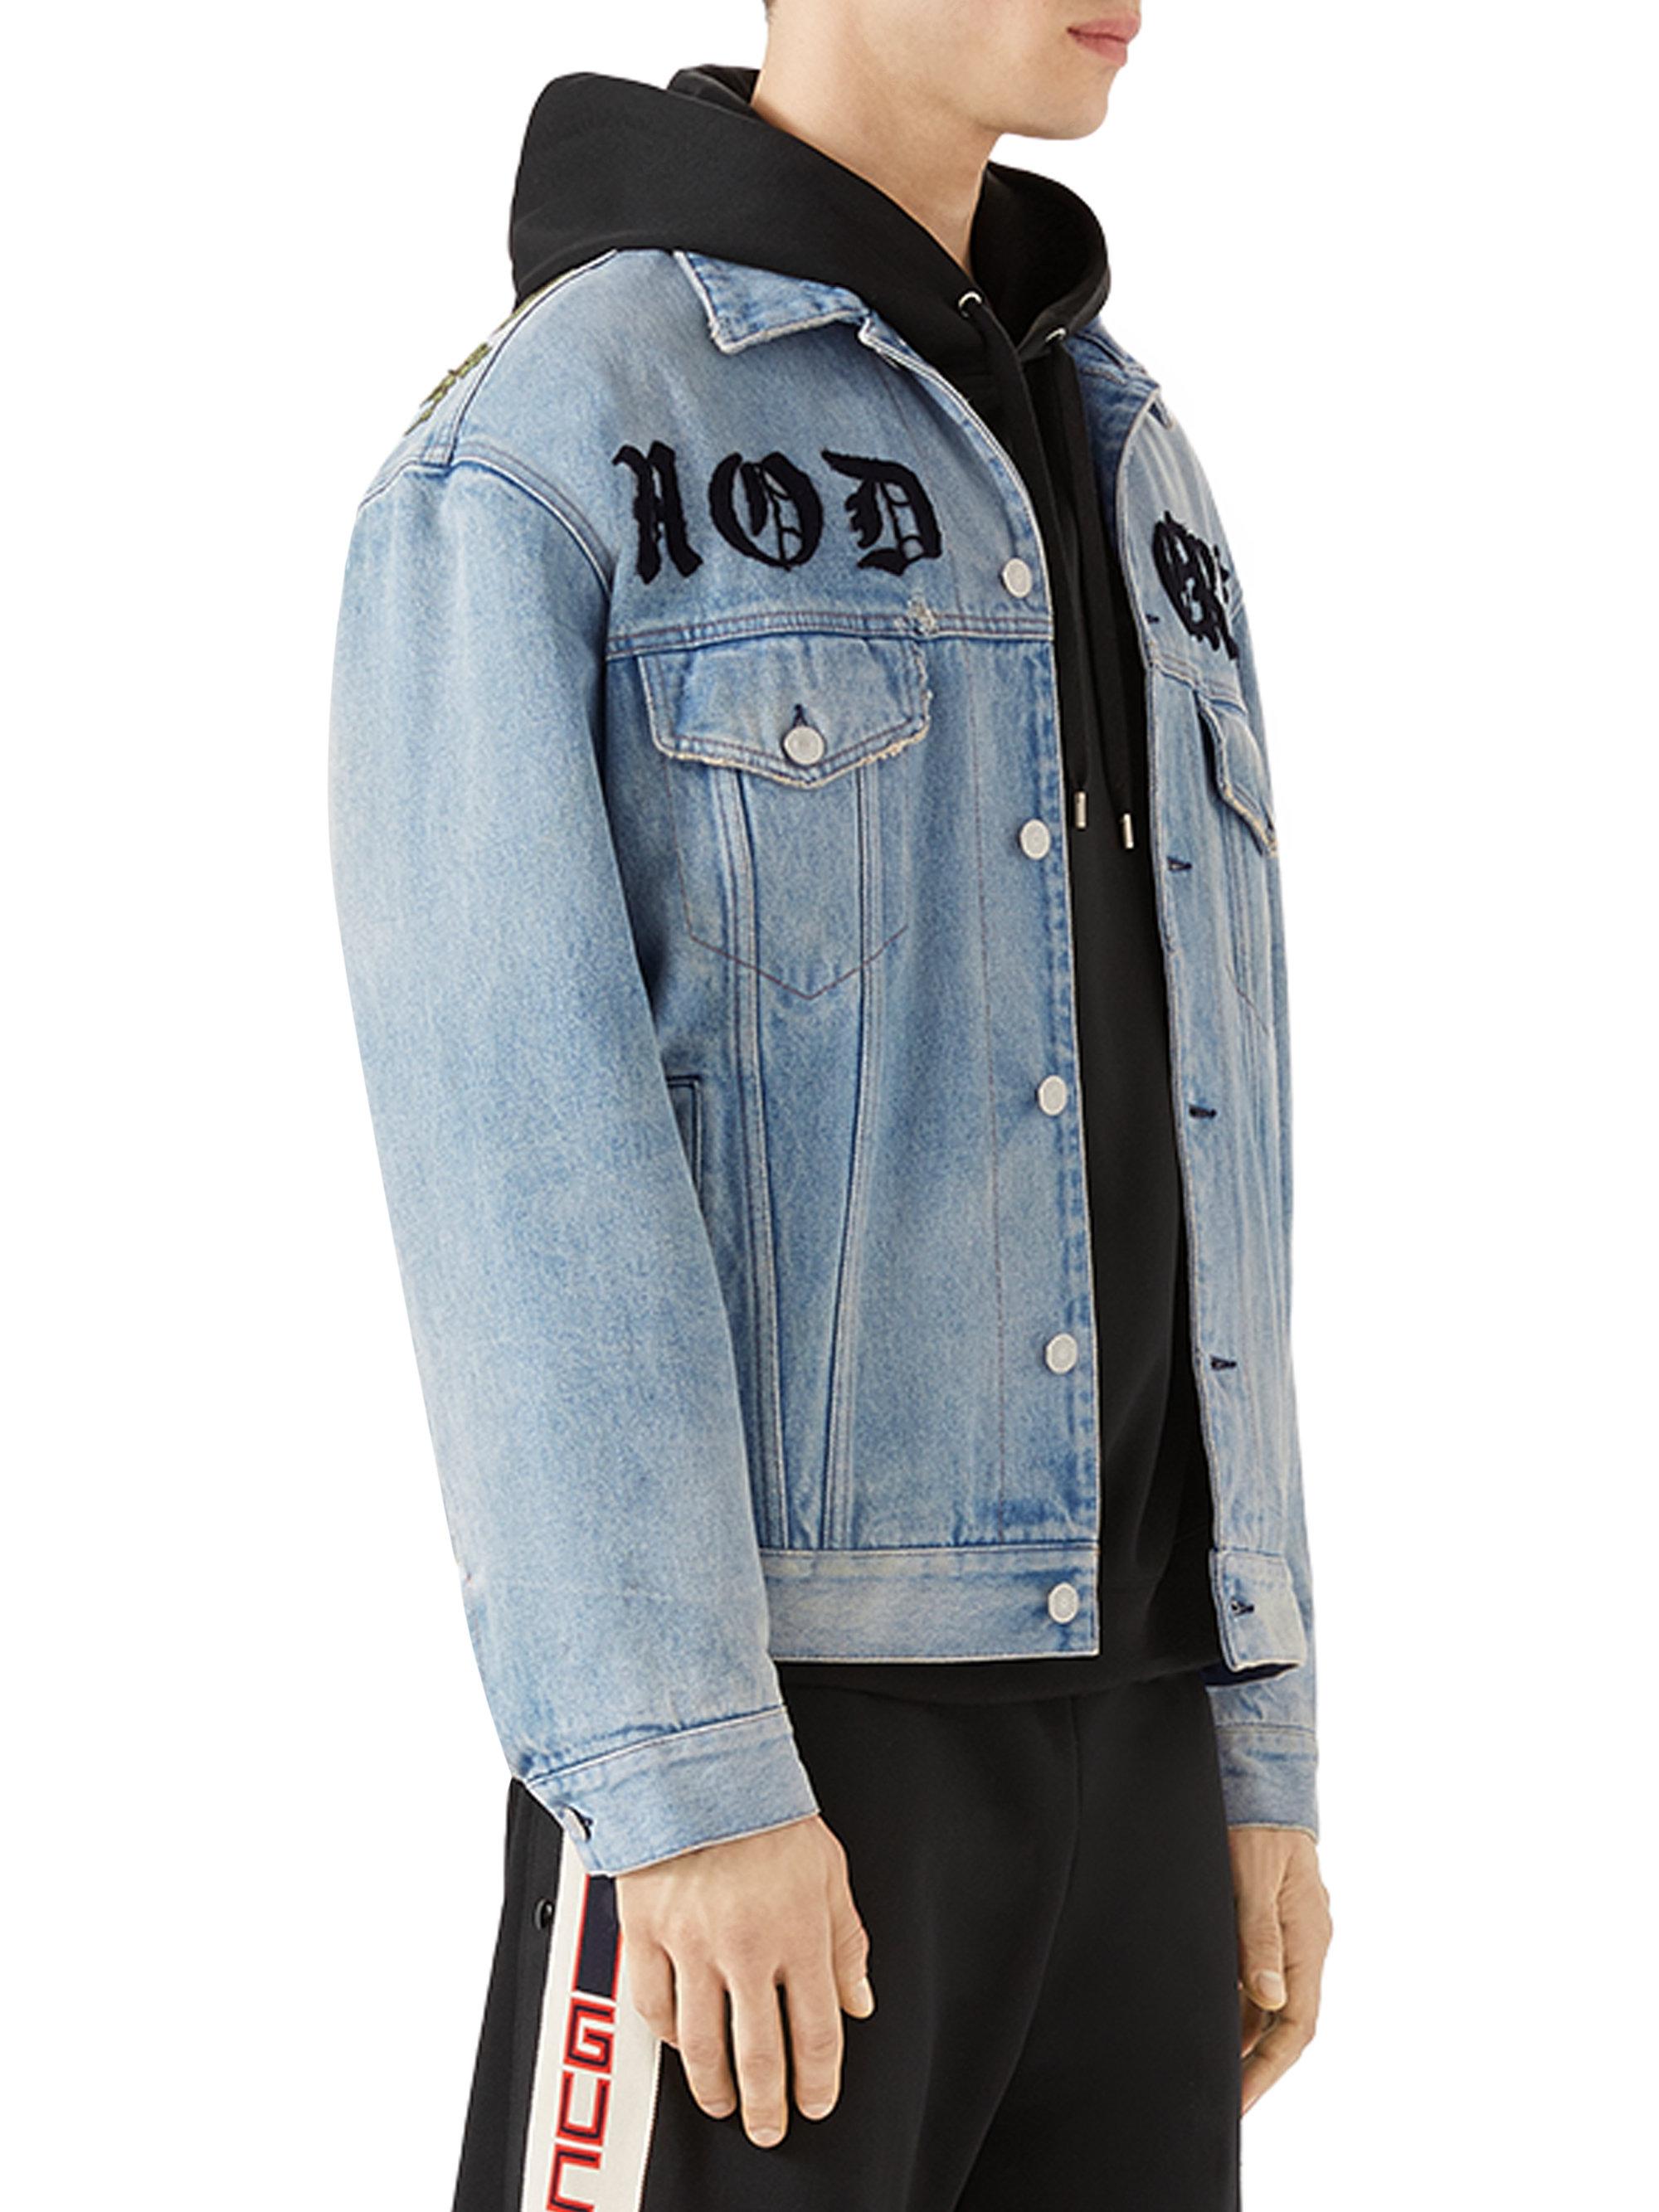 Gucci Oversize Applique Denim Jacket in Blue for Men - Lyst